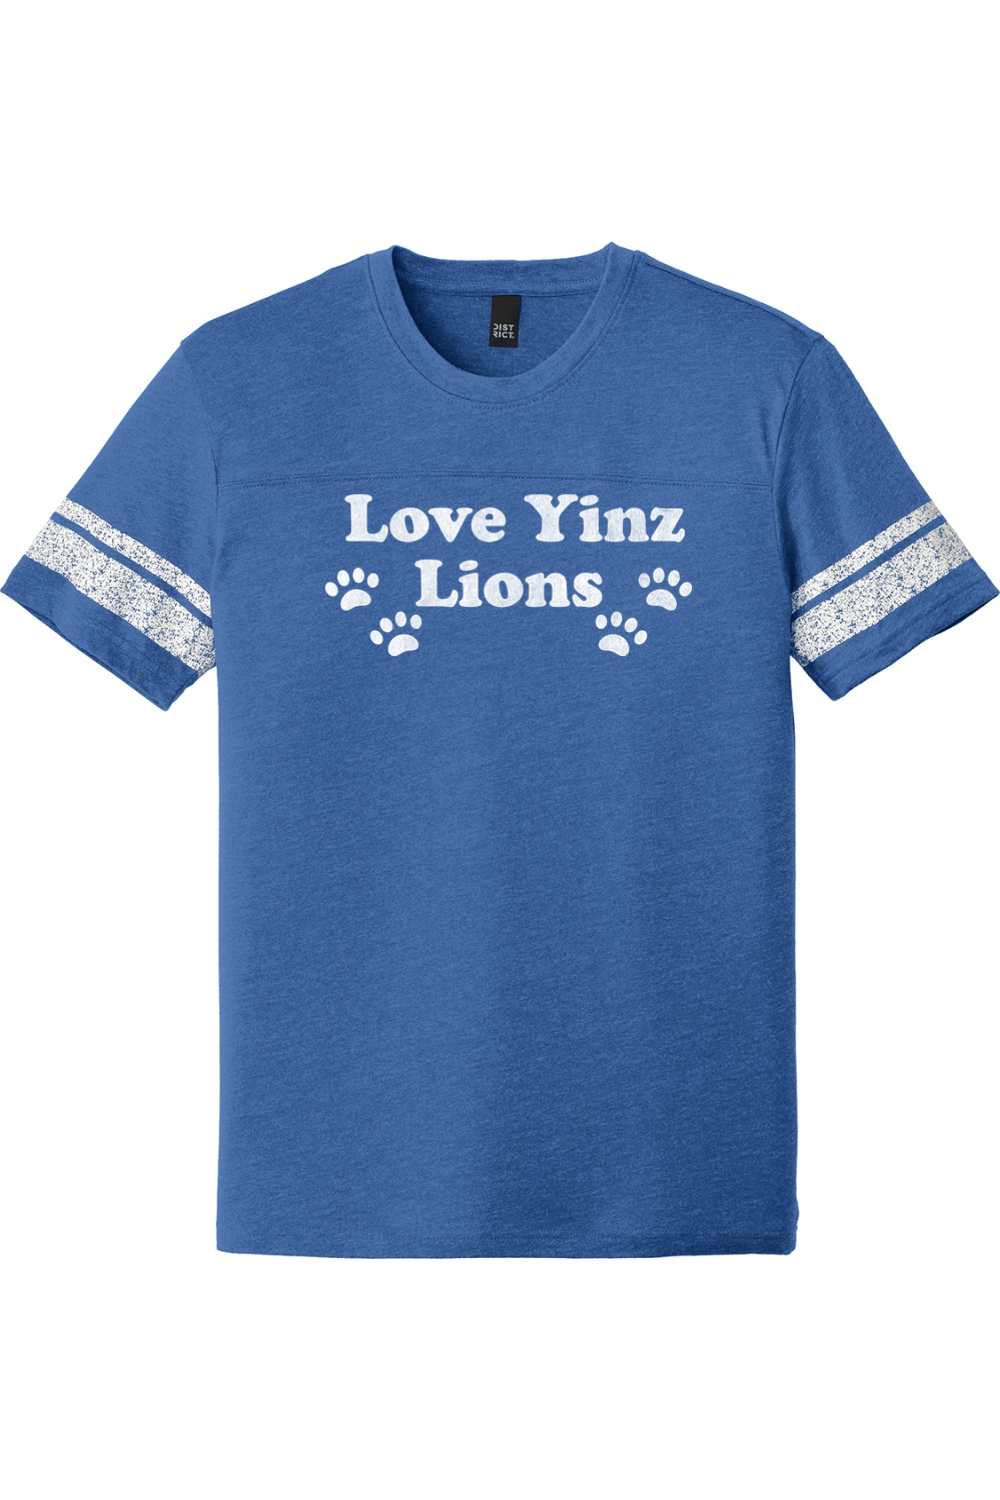 Love Yinz Lions - Game Tee - Yinzylvania